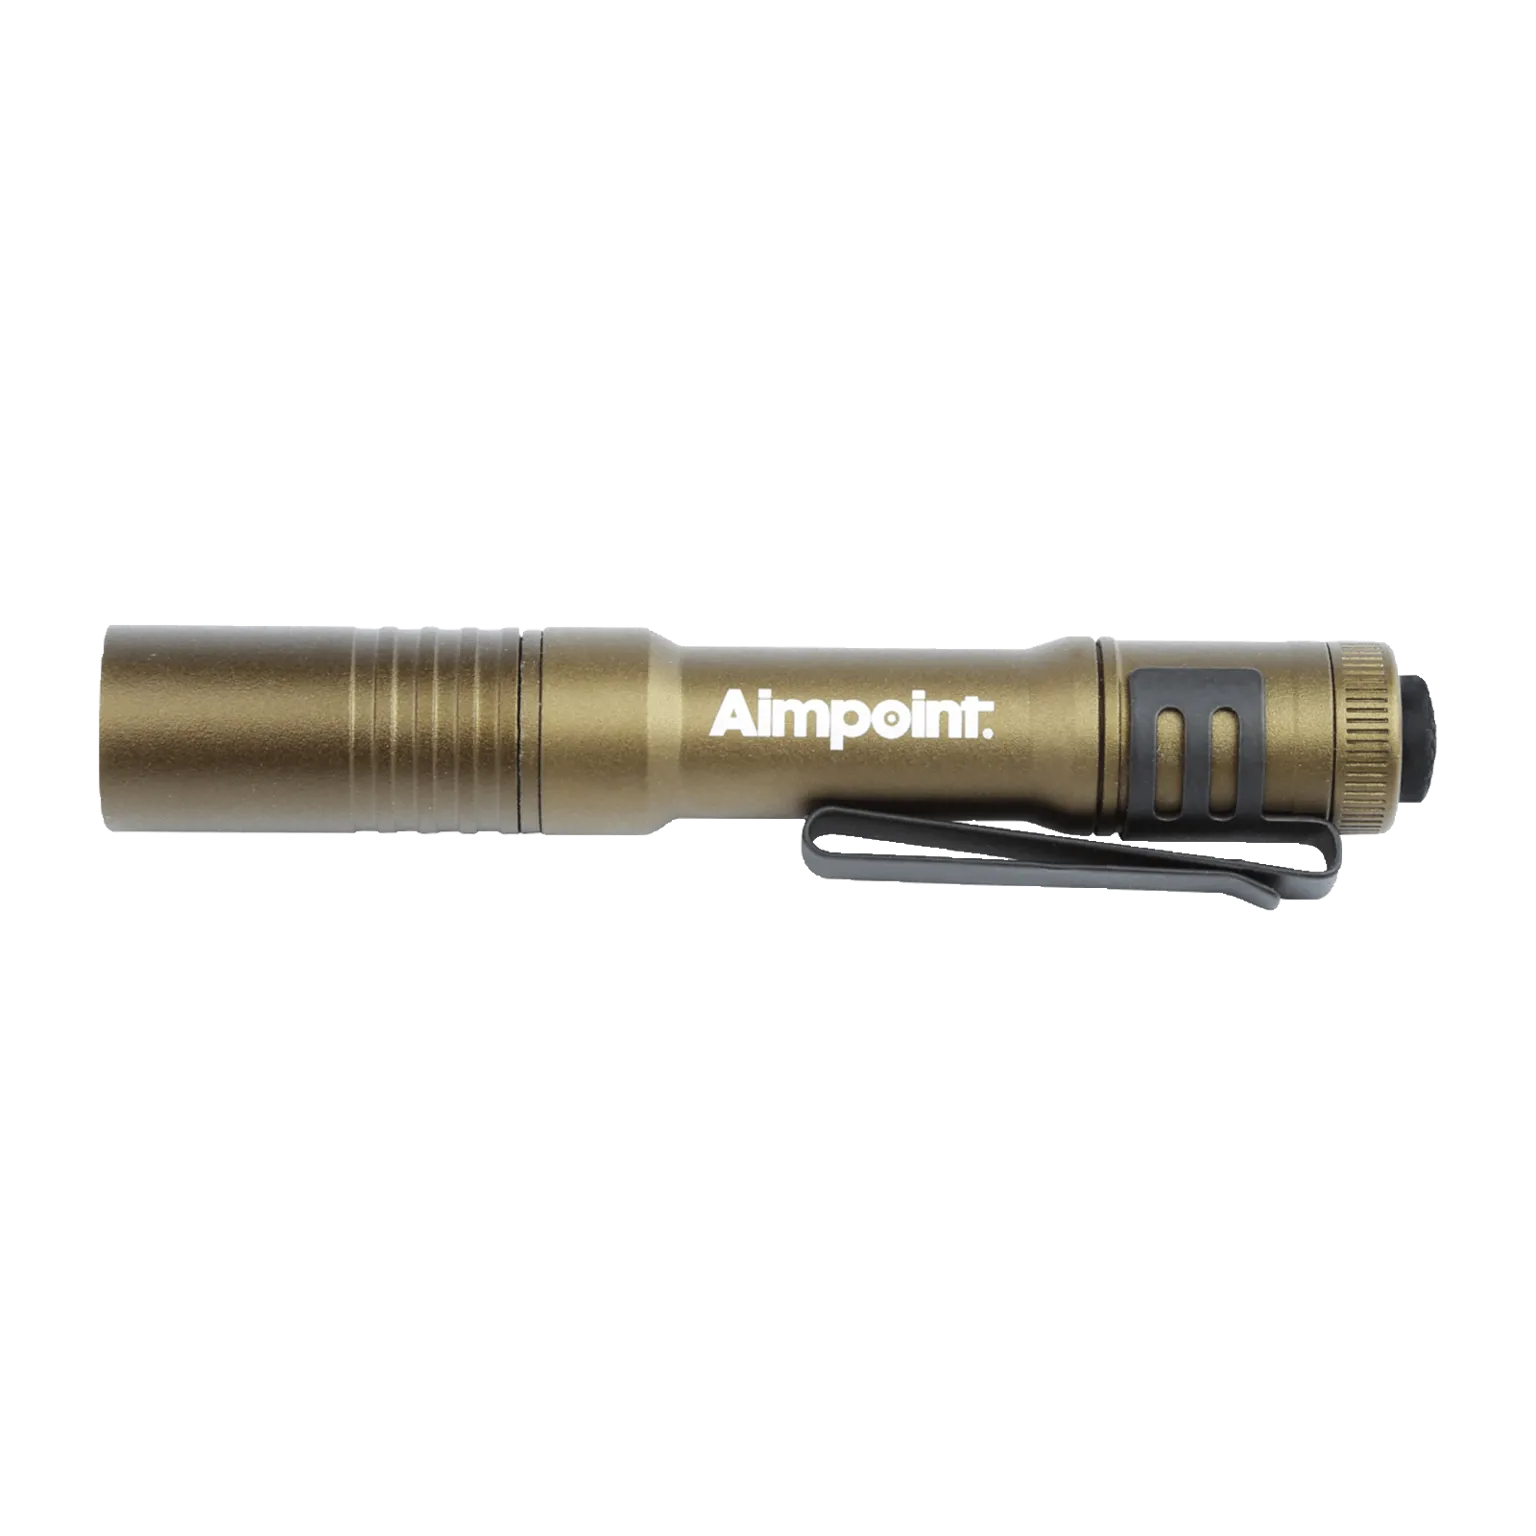 Streamlight® Taschenlampe - Braun/Beige mit Aimpoint® Logo  - 2